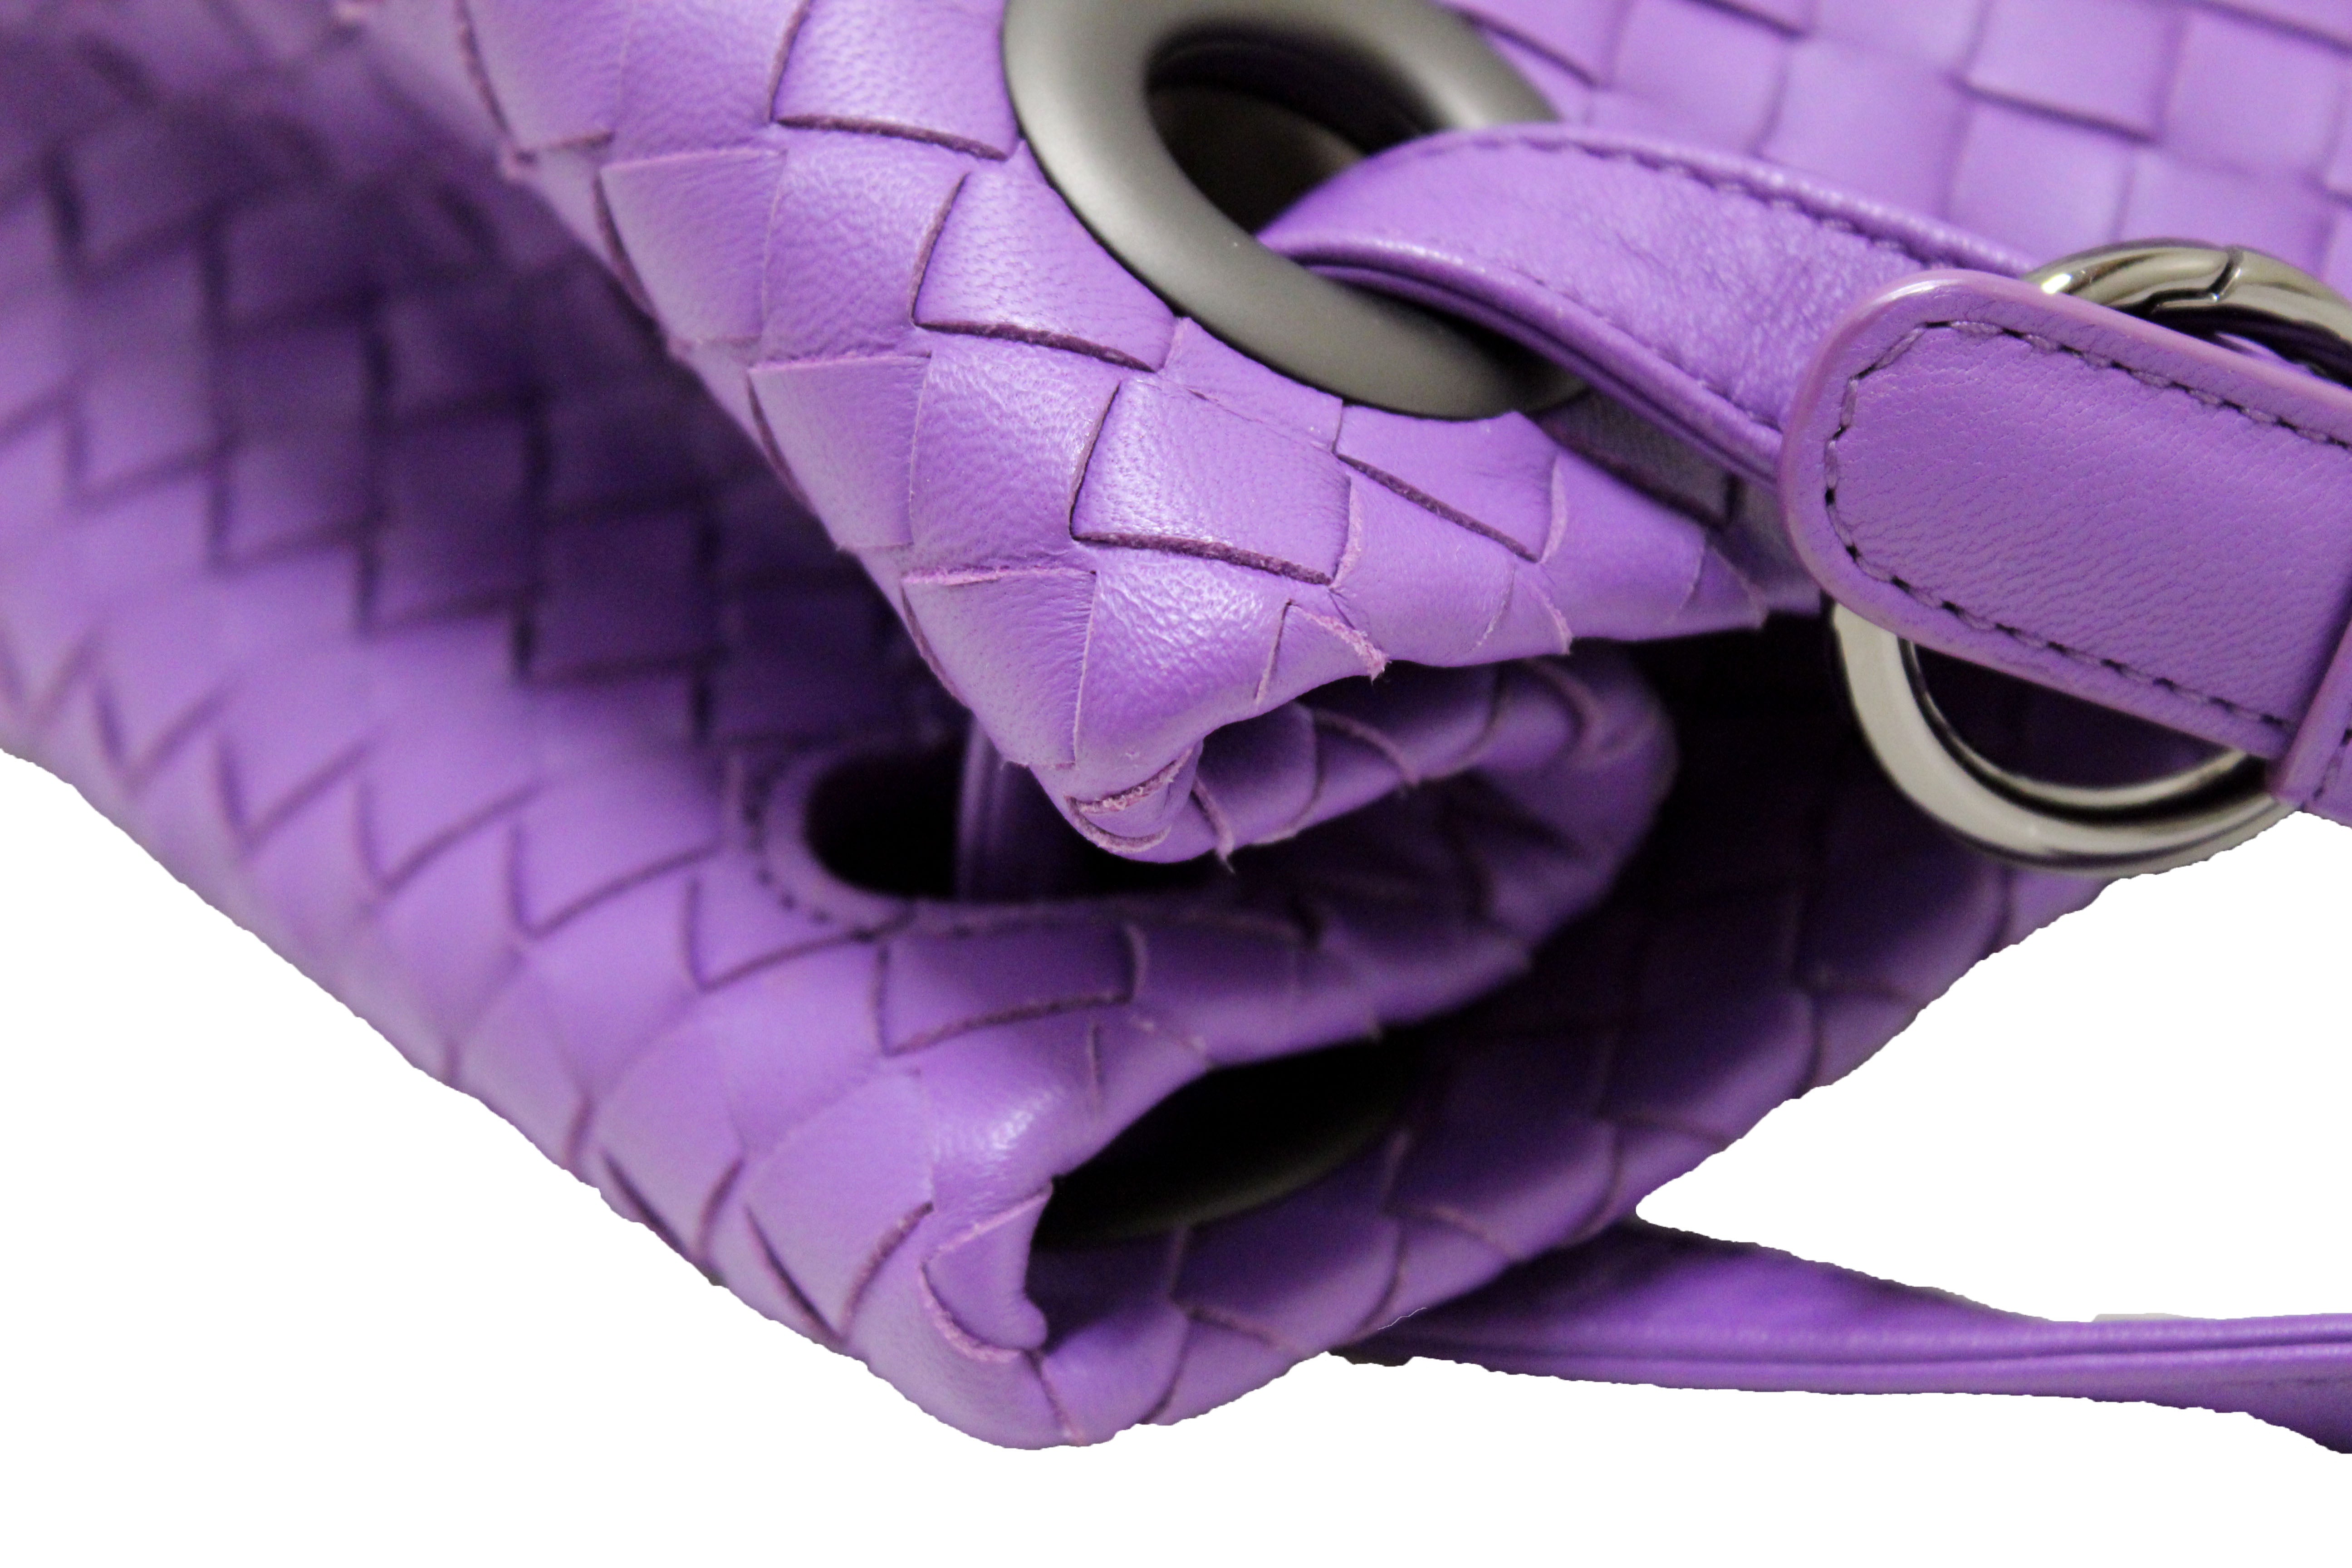 Bottega Veneta Purple/Black Woven Nappa Intrecciato Leather Chain Tote Bag